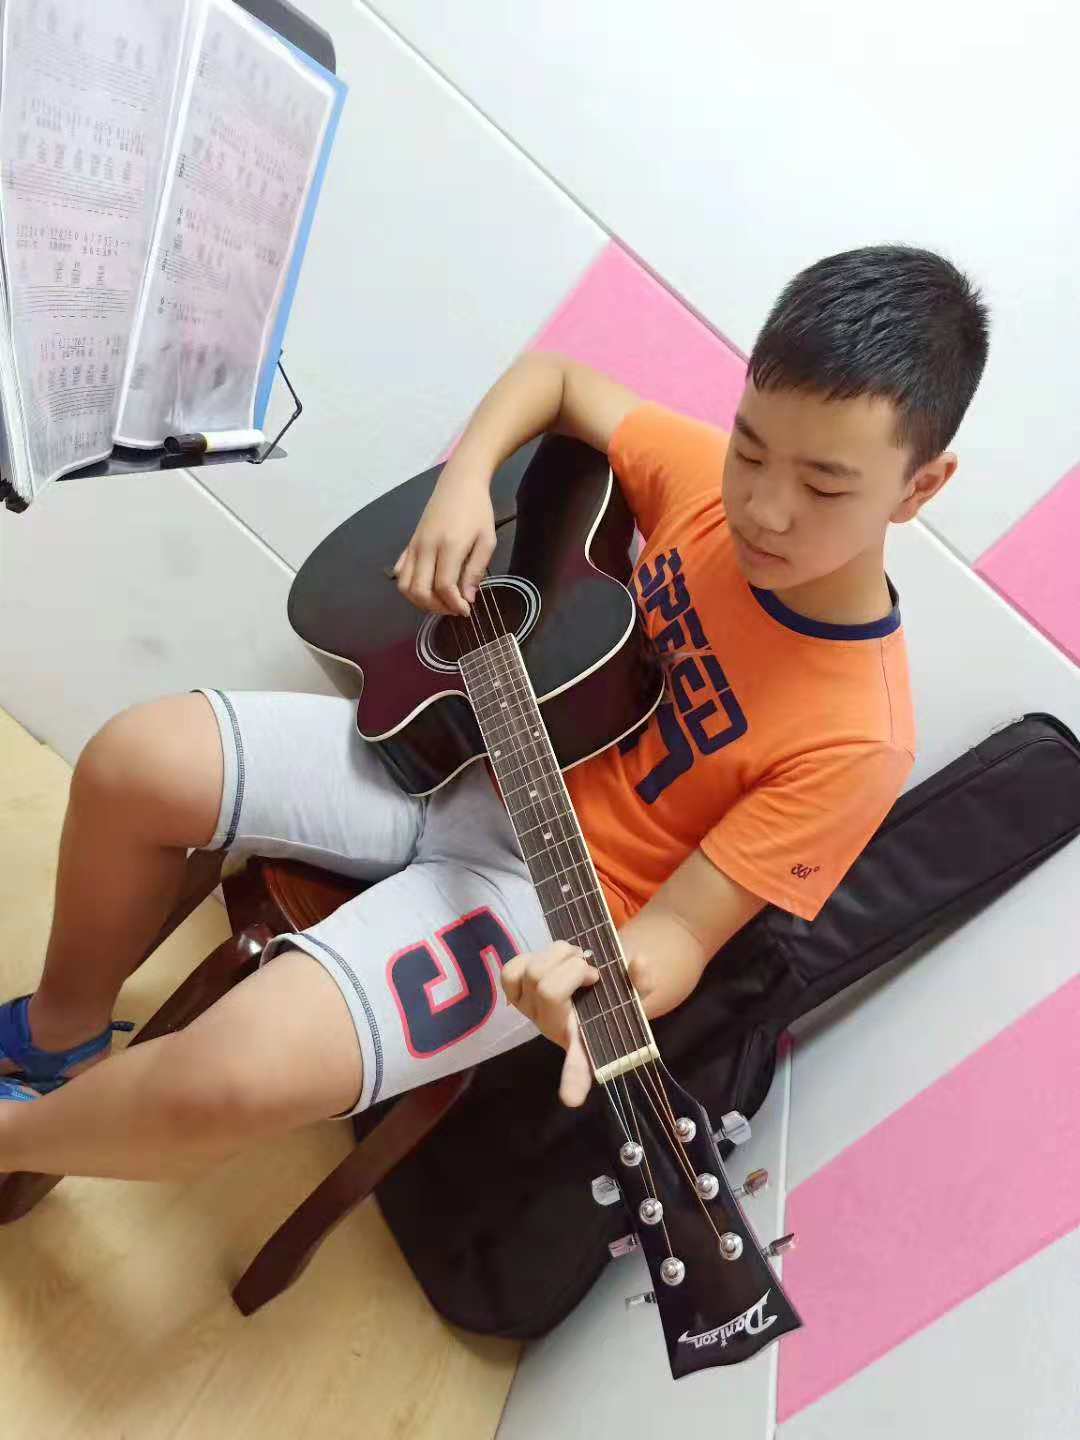 昆山苏州琴行吉他一对一私教培训体验课一节 苏州琴行吉他一对一培训体验课